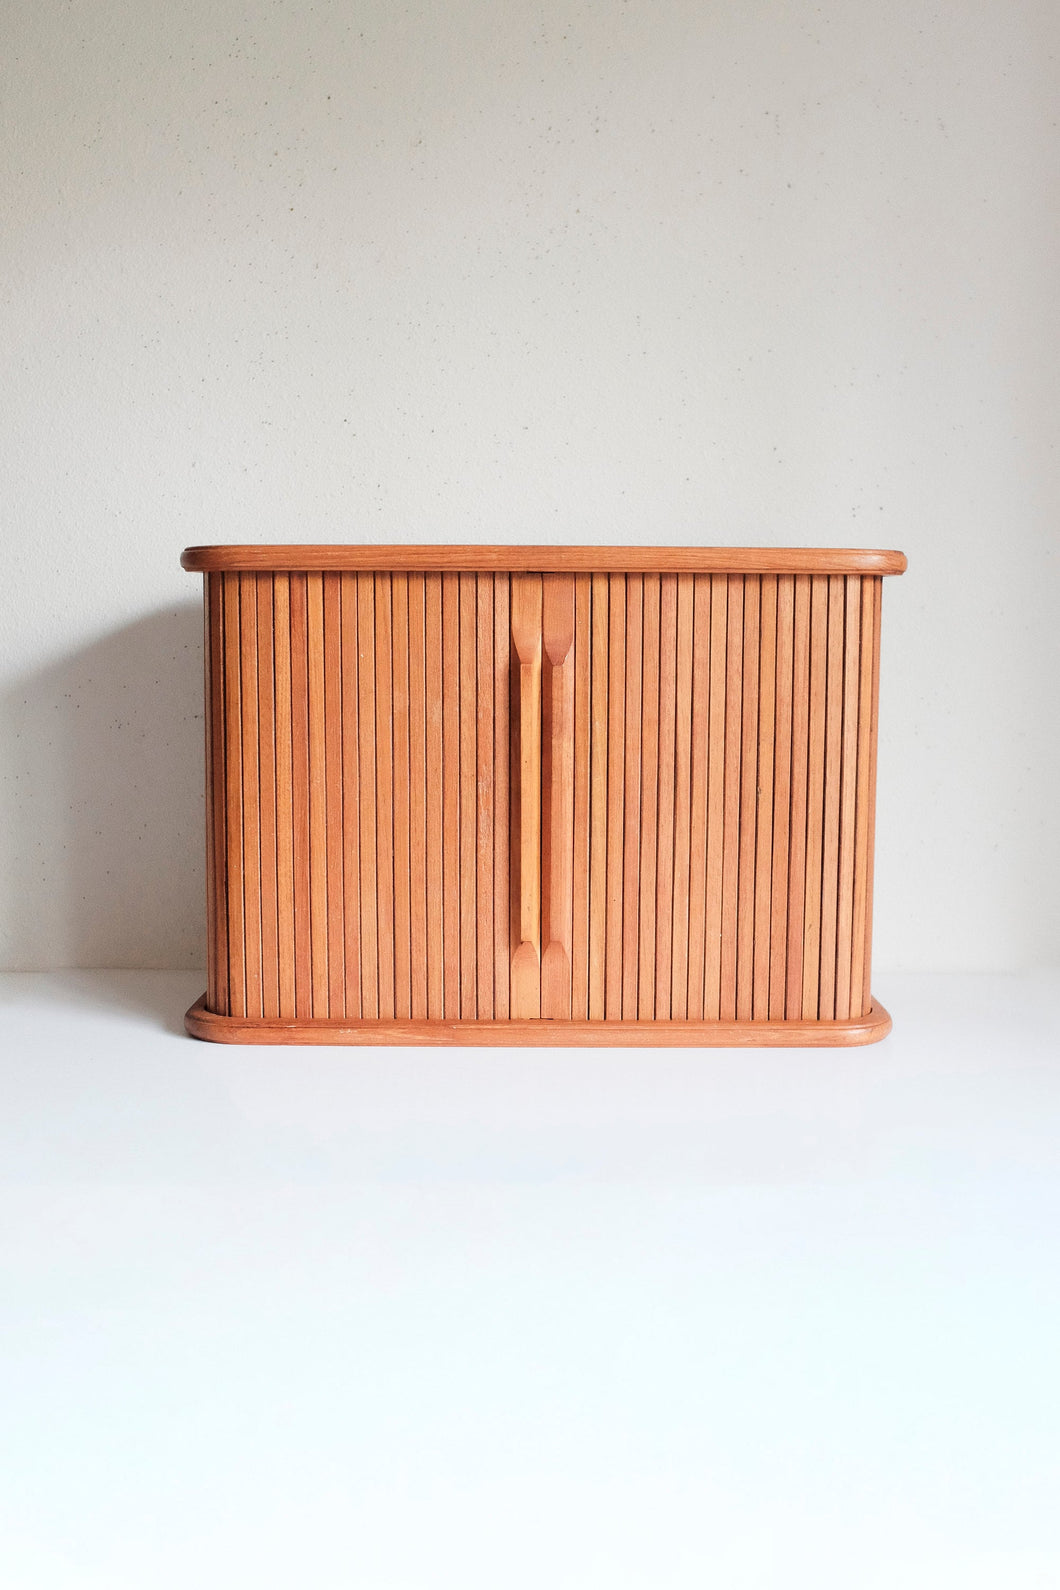 Vintage Teak tambour door storage cabinet floating shelf